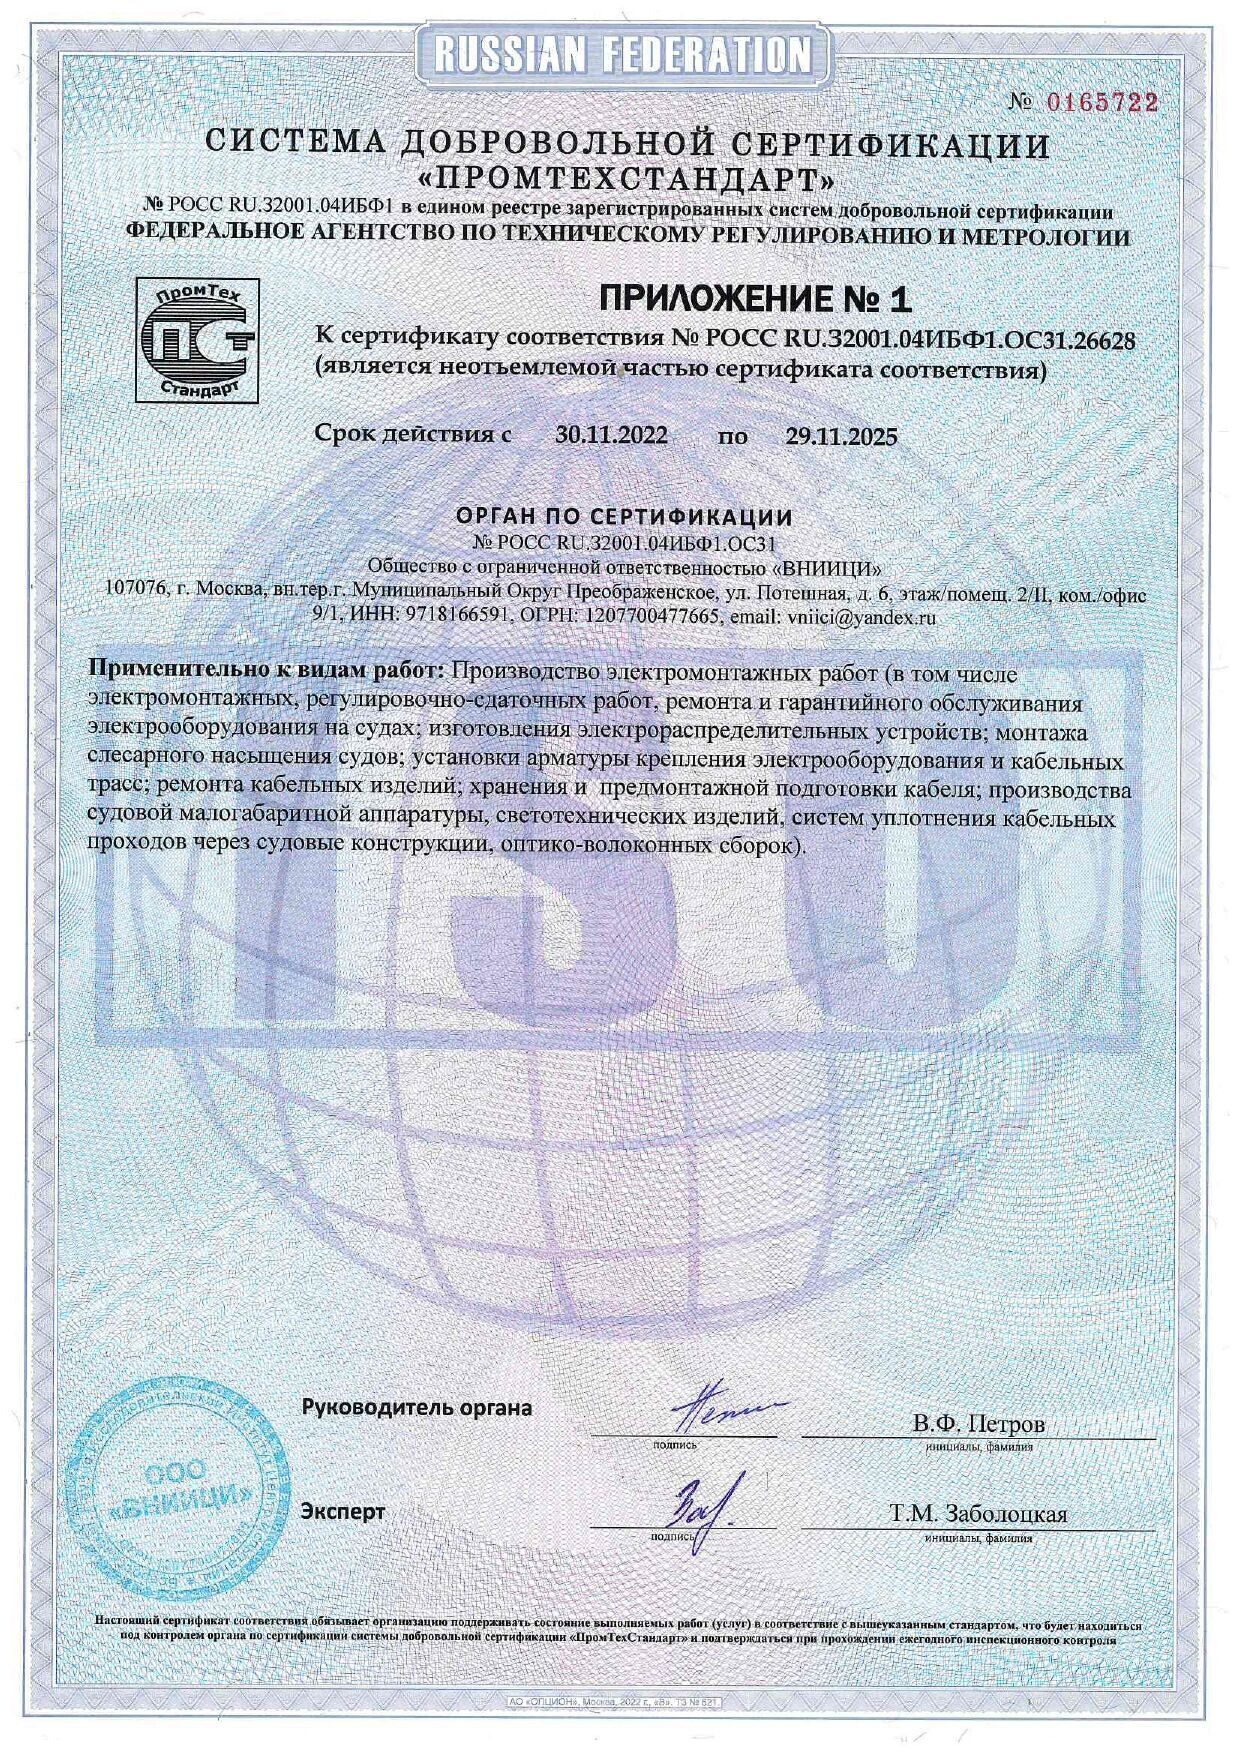 Росс ru 32001.04 ибф1. Сертификат соответствия фото. Приложение к сертификату. Сертификат соответствия № Росс ru.32001.04ибф1.ОСП18.13681. Сертификат соответствия Росс ru.32001.04ибф1.ОСП28.47506.